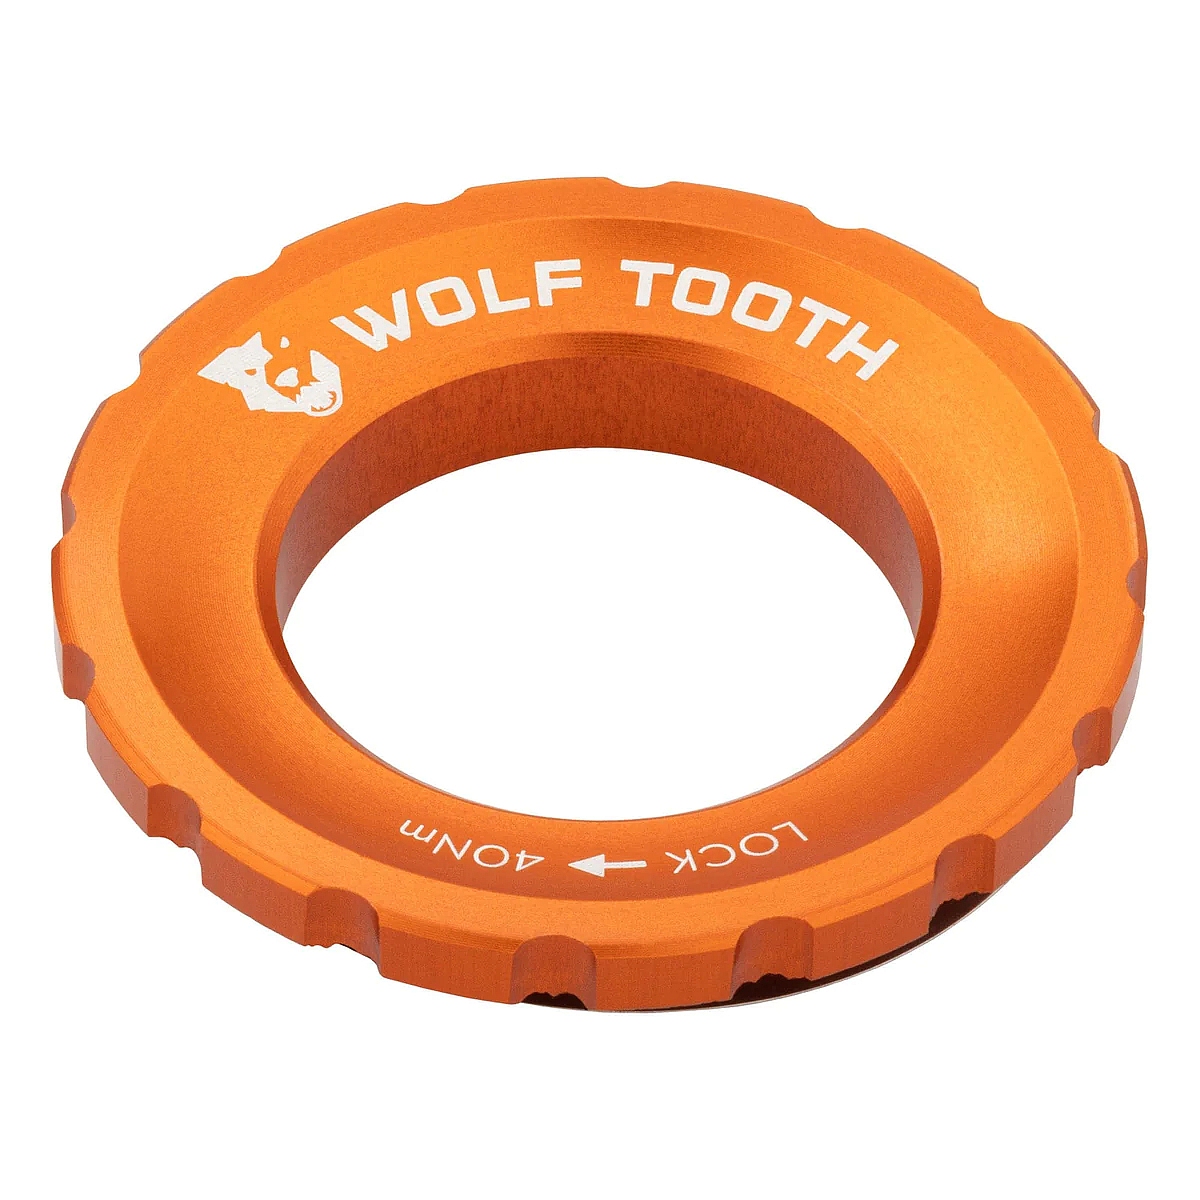 Produktbild von Wolf Tooth Centerlock Lockring - Außenverzahnung - orange